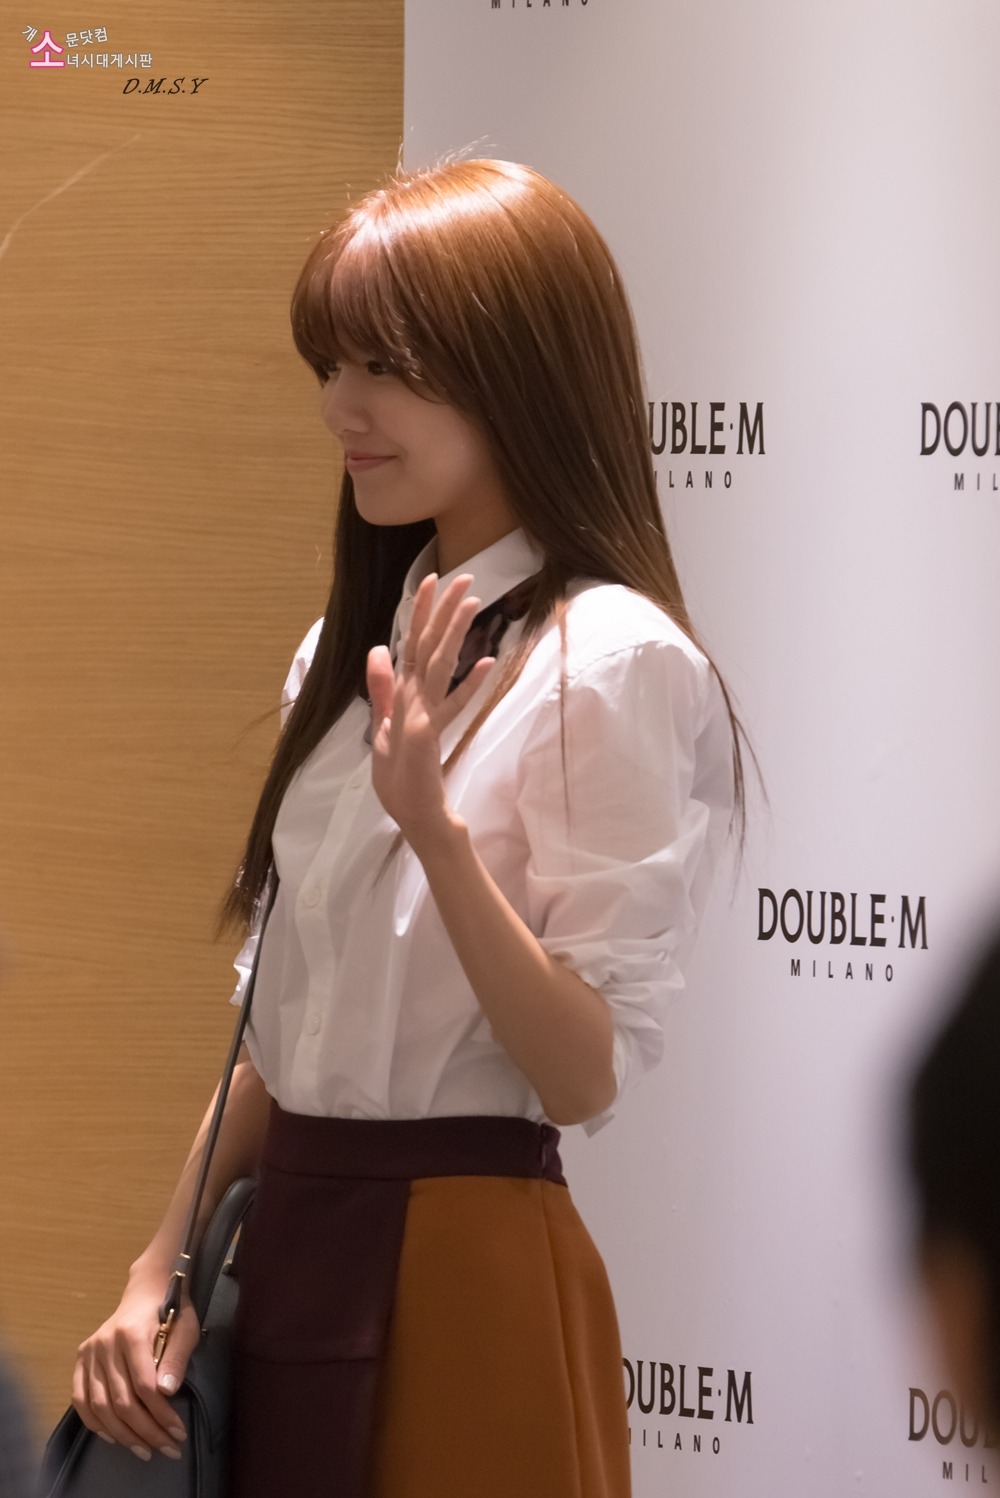 [PIC][23-07-2013]SooYoung xuất hiện tại buổi fansign thứ 3 cho thương hiệu "Double M" vào chiều nay   015CBA4751EEA38321EA8B